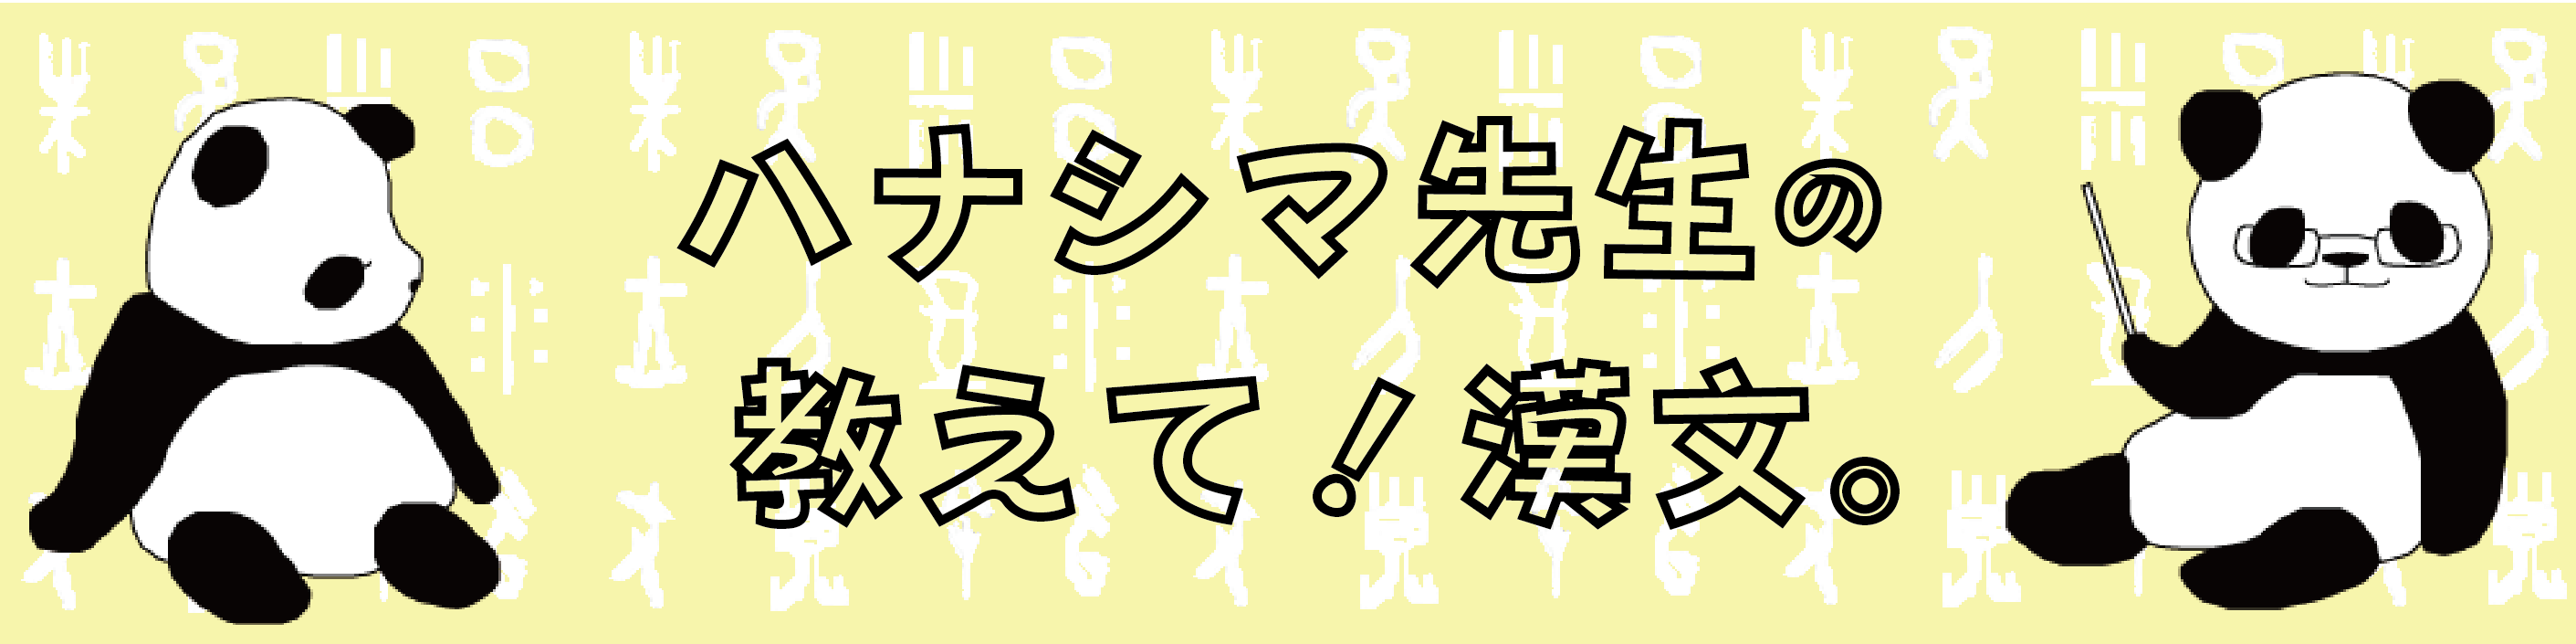 漢文の 為 為す 為る 為に 為り の意味 用法 例文まとめ 名言を味わいつつ学ぼう ハナシマ先生の教えて 漢文